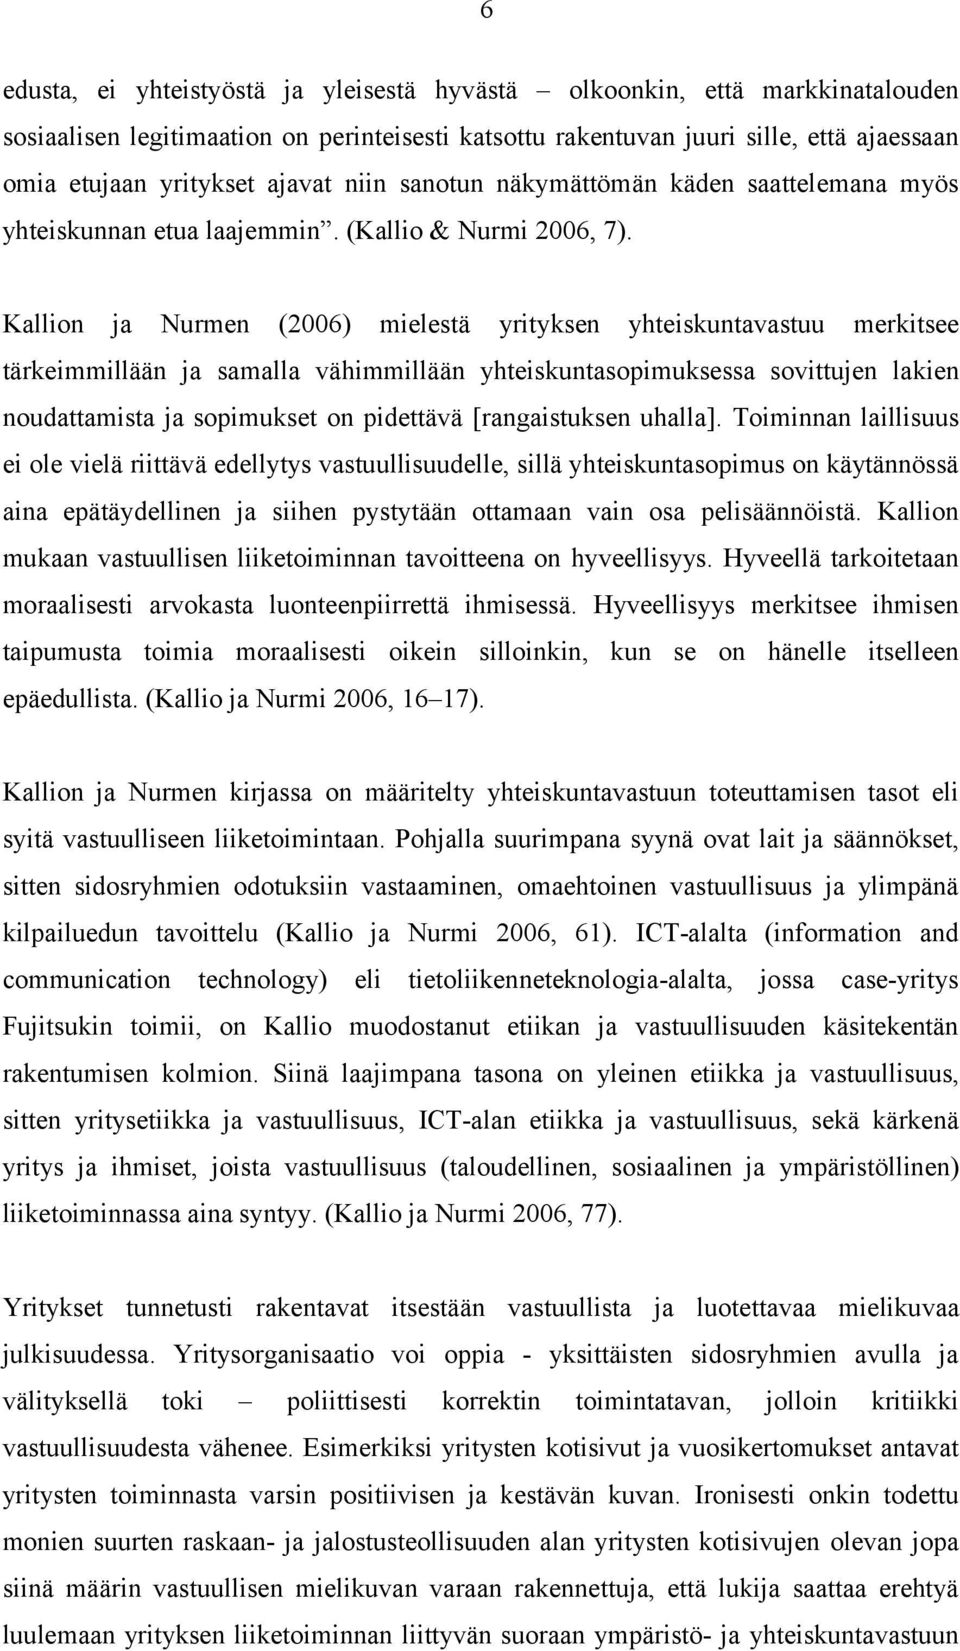 Kallion ja Nurmen (2006) mielestä yrityksen yhteiskuntavastuu merkitsee tärkeimmillään ja samalla vähimmillään yhteiskuntasopimuksessa sovittujen lakien noudattamista ja sopimukset on pidettävä